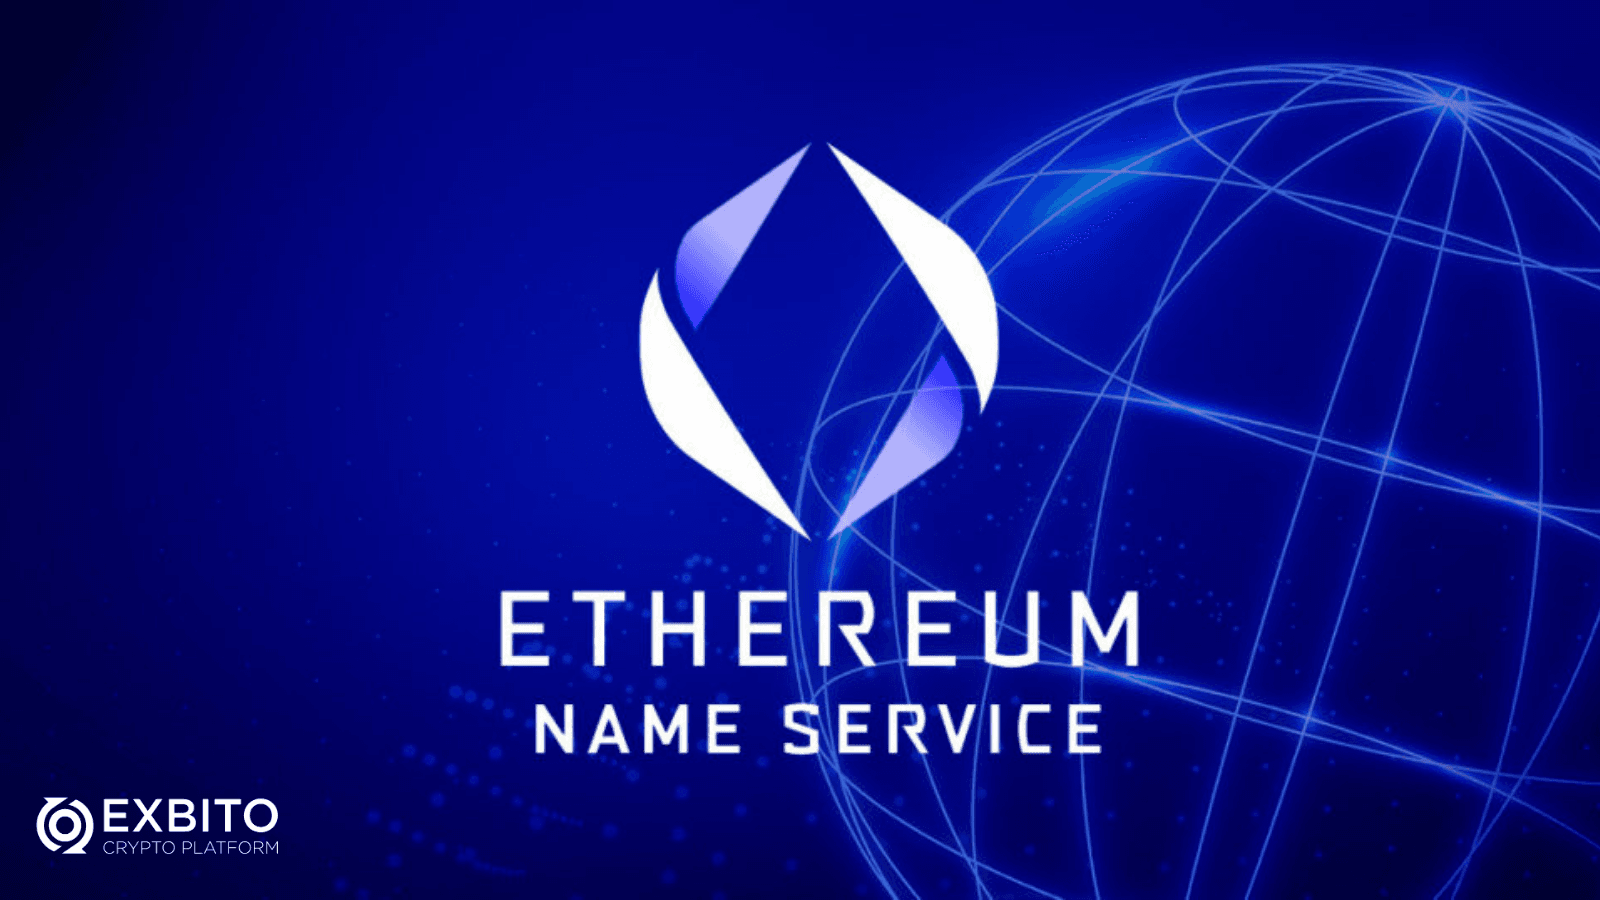 اتریوم نیم سرویس (Ethereum Name Service) چیست؟